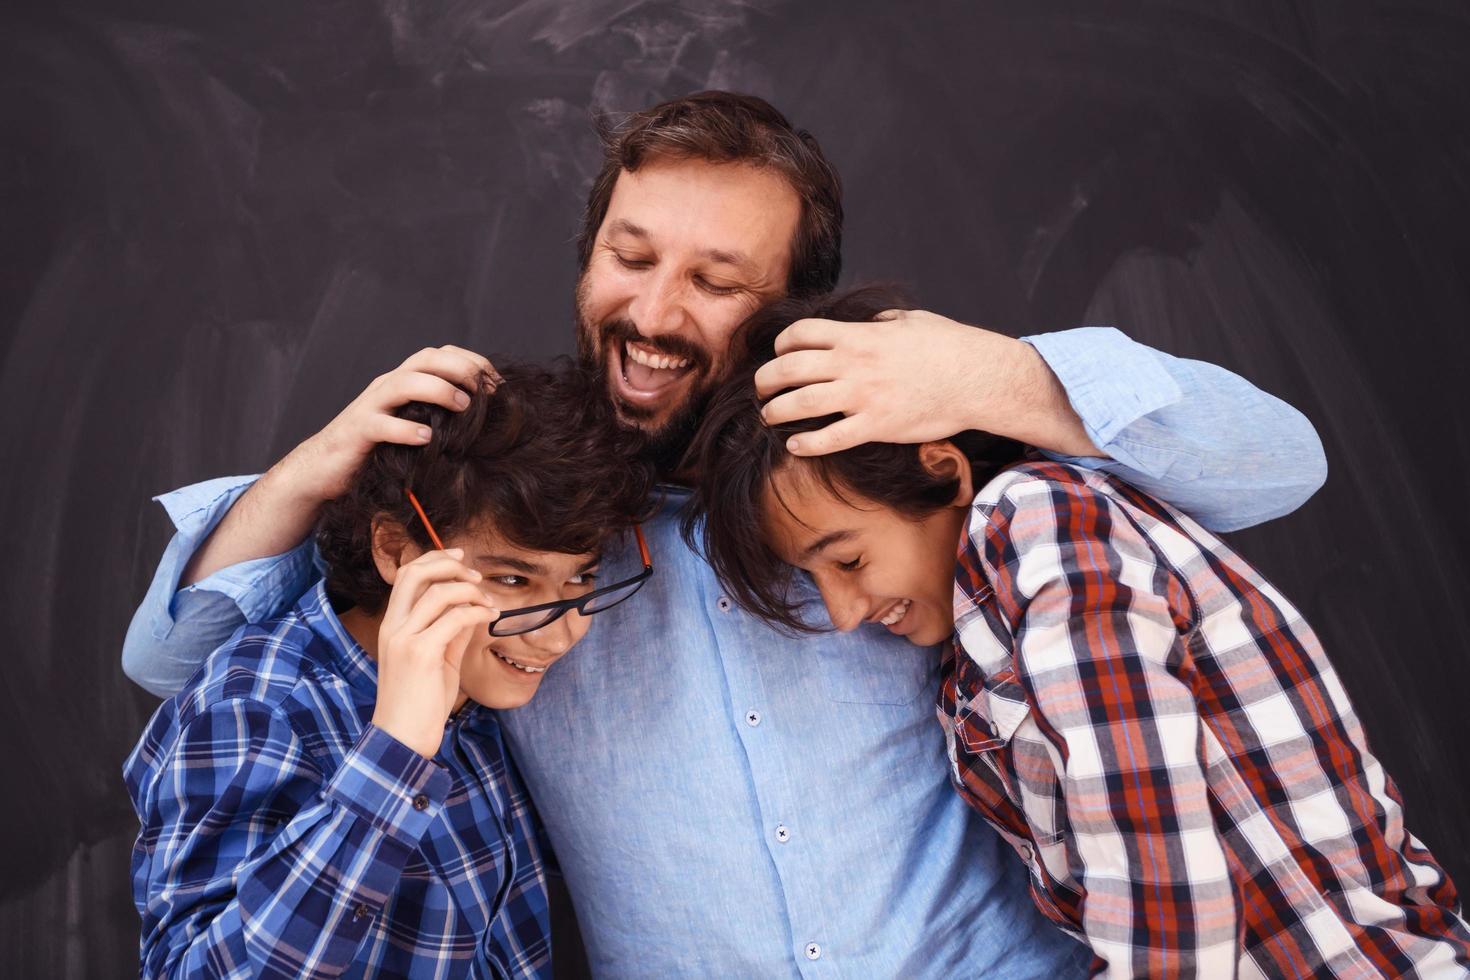 feliz padre abrazando a sus hijos momentos inolvidables de alegría familiar en una familia árabe de raza mixta del medio oriente foto